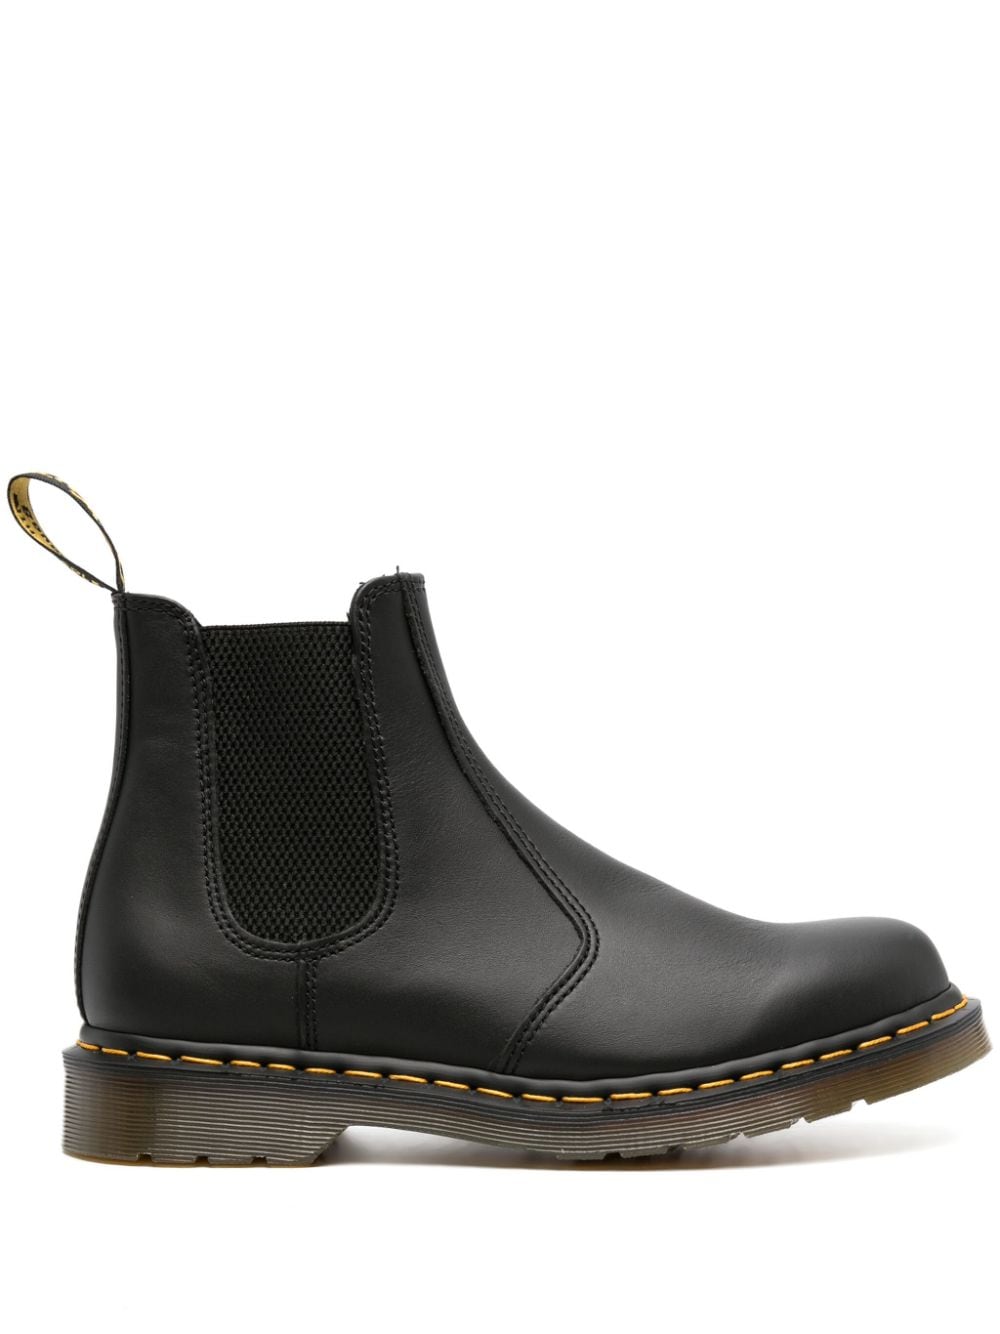 Dr. Martens 2976 Chelsea leather boots - Black von Dr. Martens